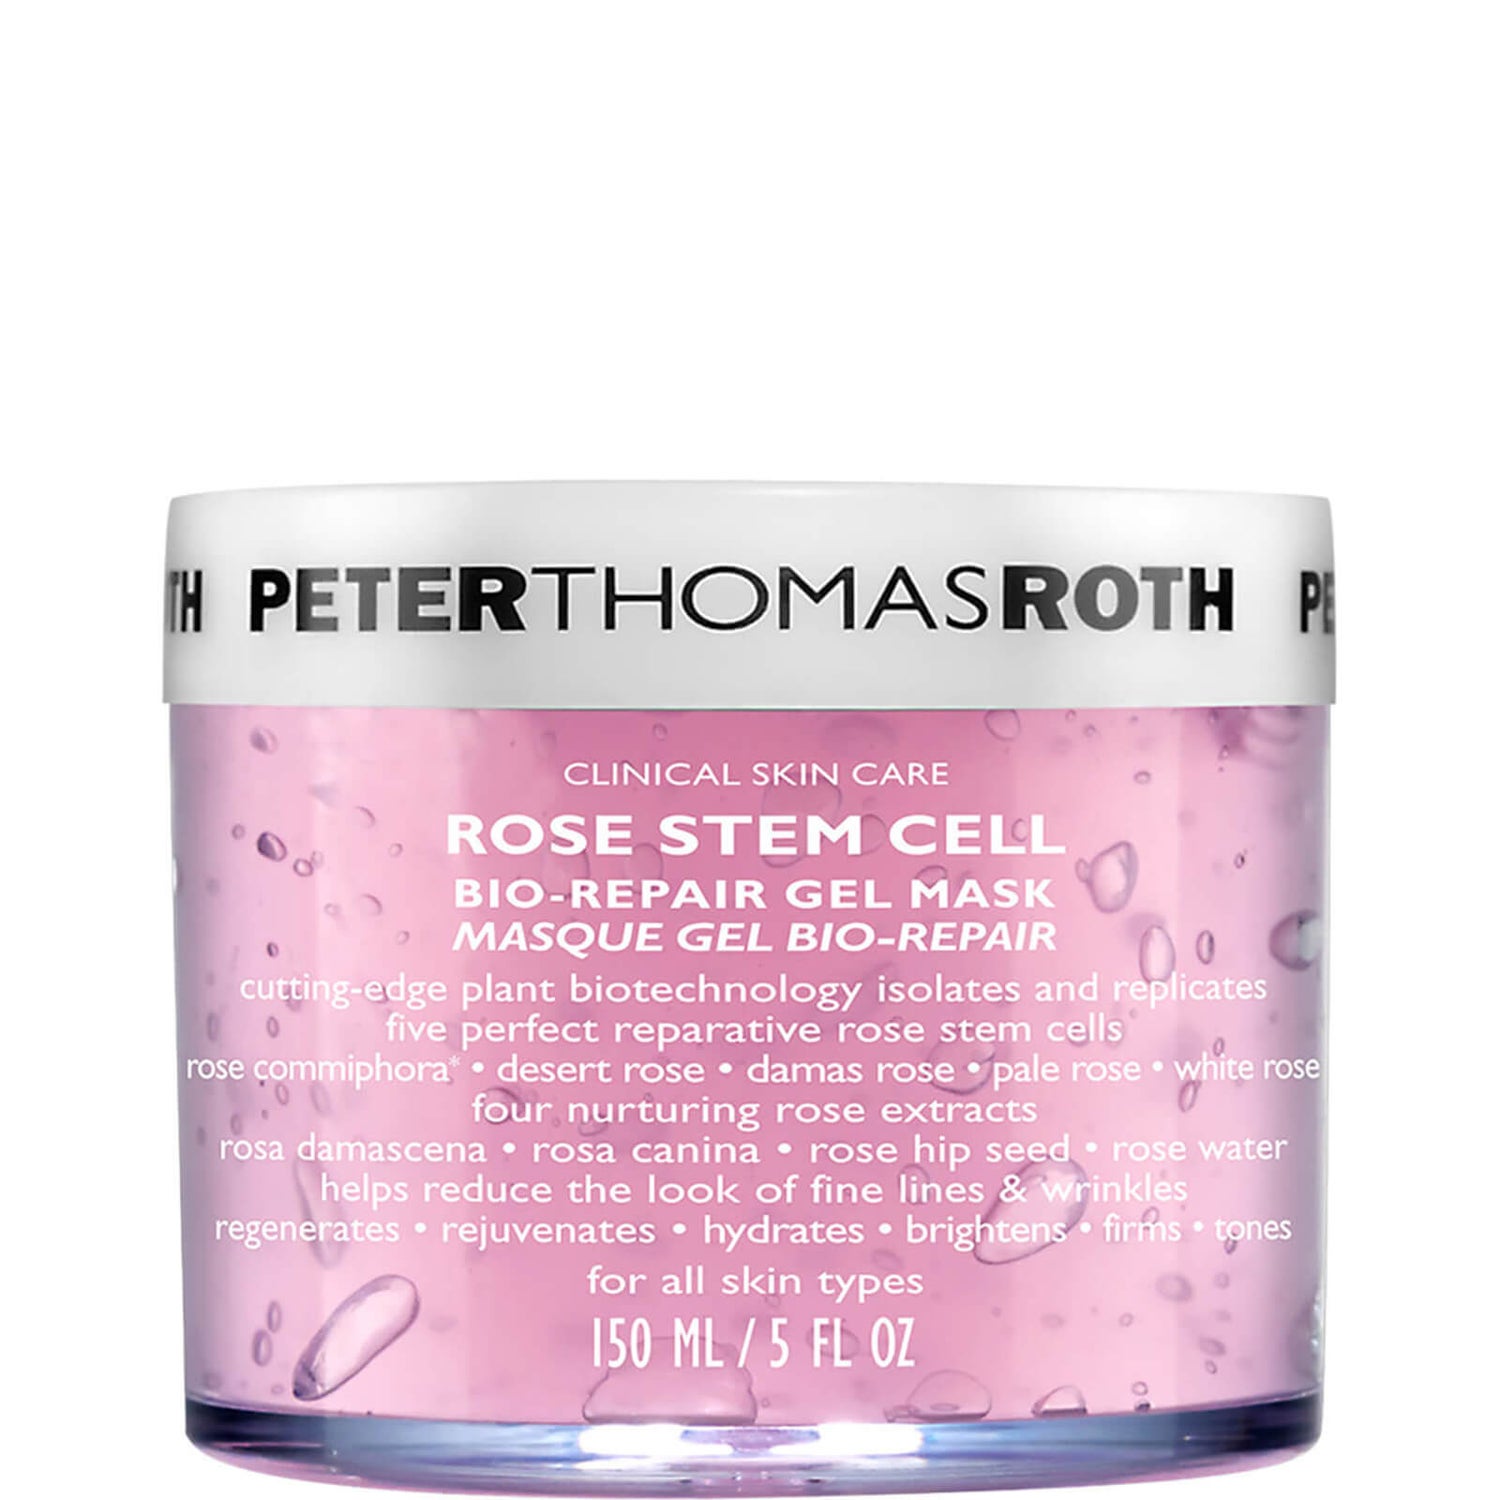 Peter Thomas Roth Rose Stem Cell: Bio-Repair Gel Mask